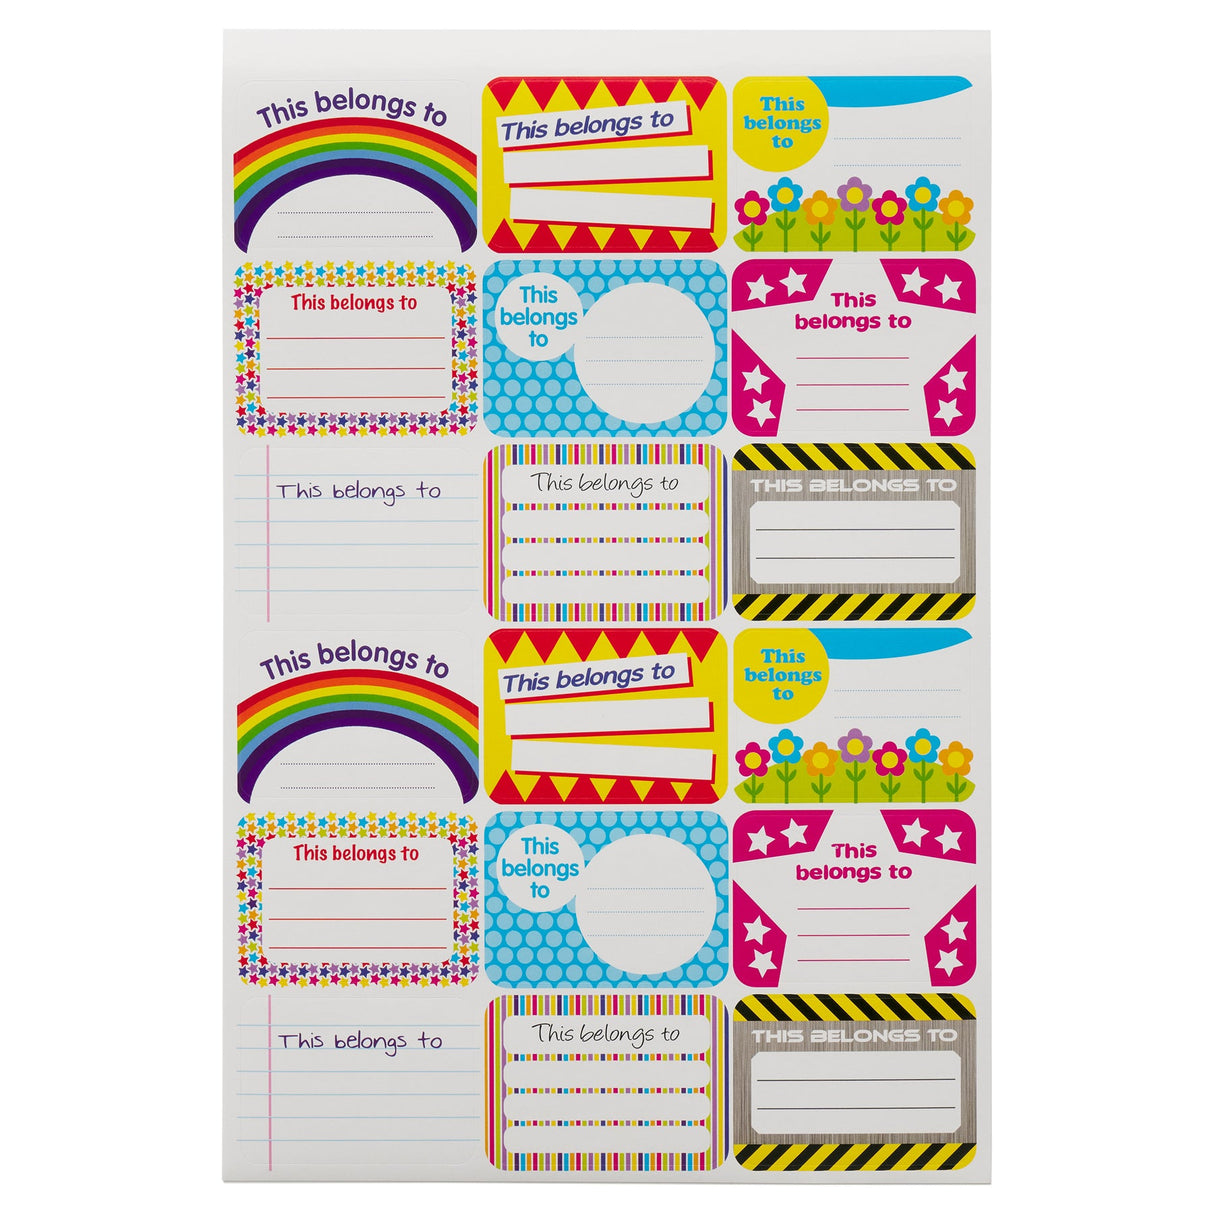 Clever Kidz Reward Sticker Pad - 1000+ Stickers-Reward Stickers-Clever Kidz|StationeryShop.co.uk